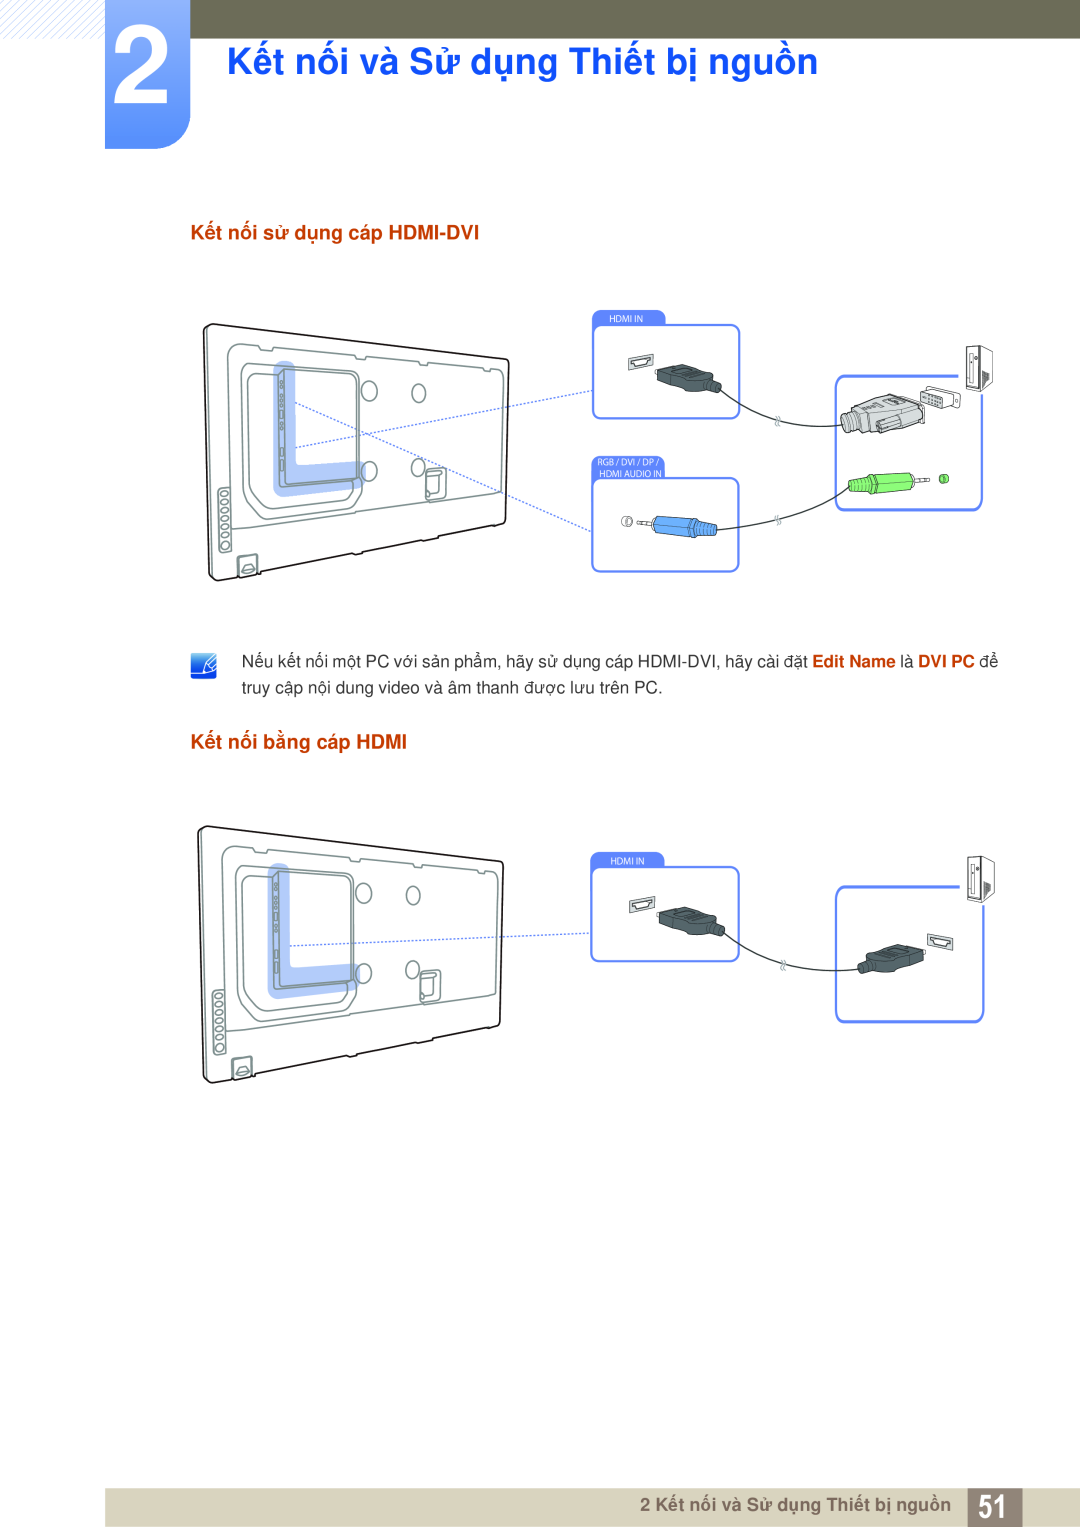 Samsung LH46MEPLGC/XY 2 Kết nối và Sử dụng Thiết bị nguồn, Kết nối sử dụng cáp HDMI-DVI, Kết nối bằng cáp HDMI, Hdmi In 